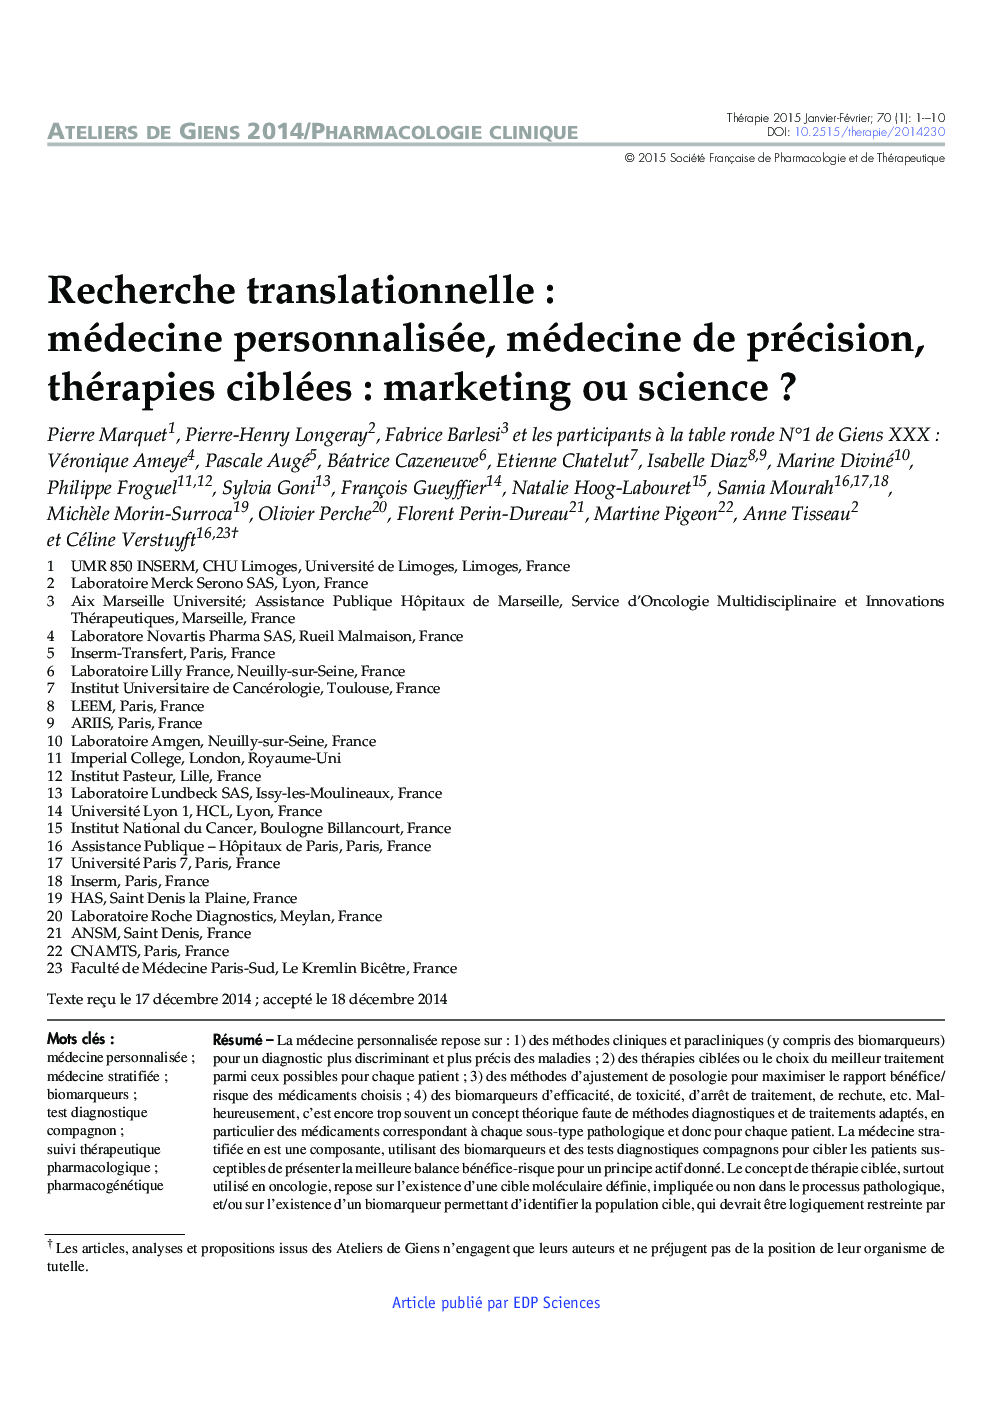 Recherche translationnelle : médecine personnalisée, médecine de précision, thérapies ciblées : marketing ou science ?